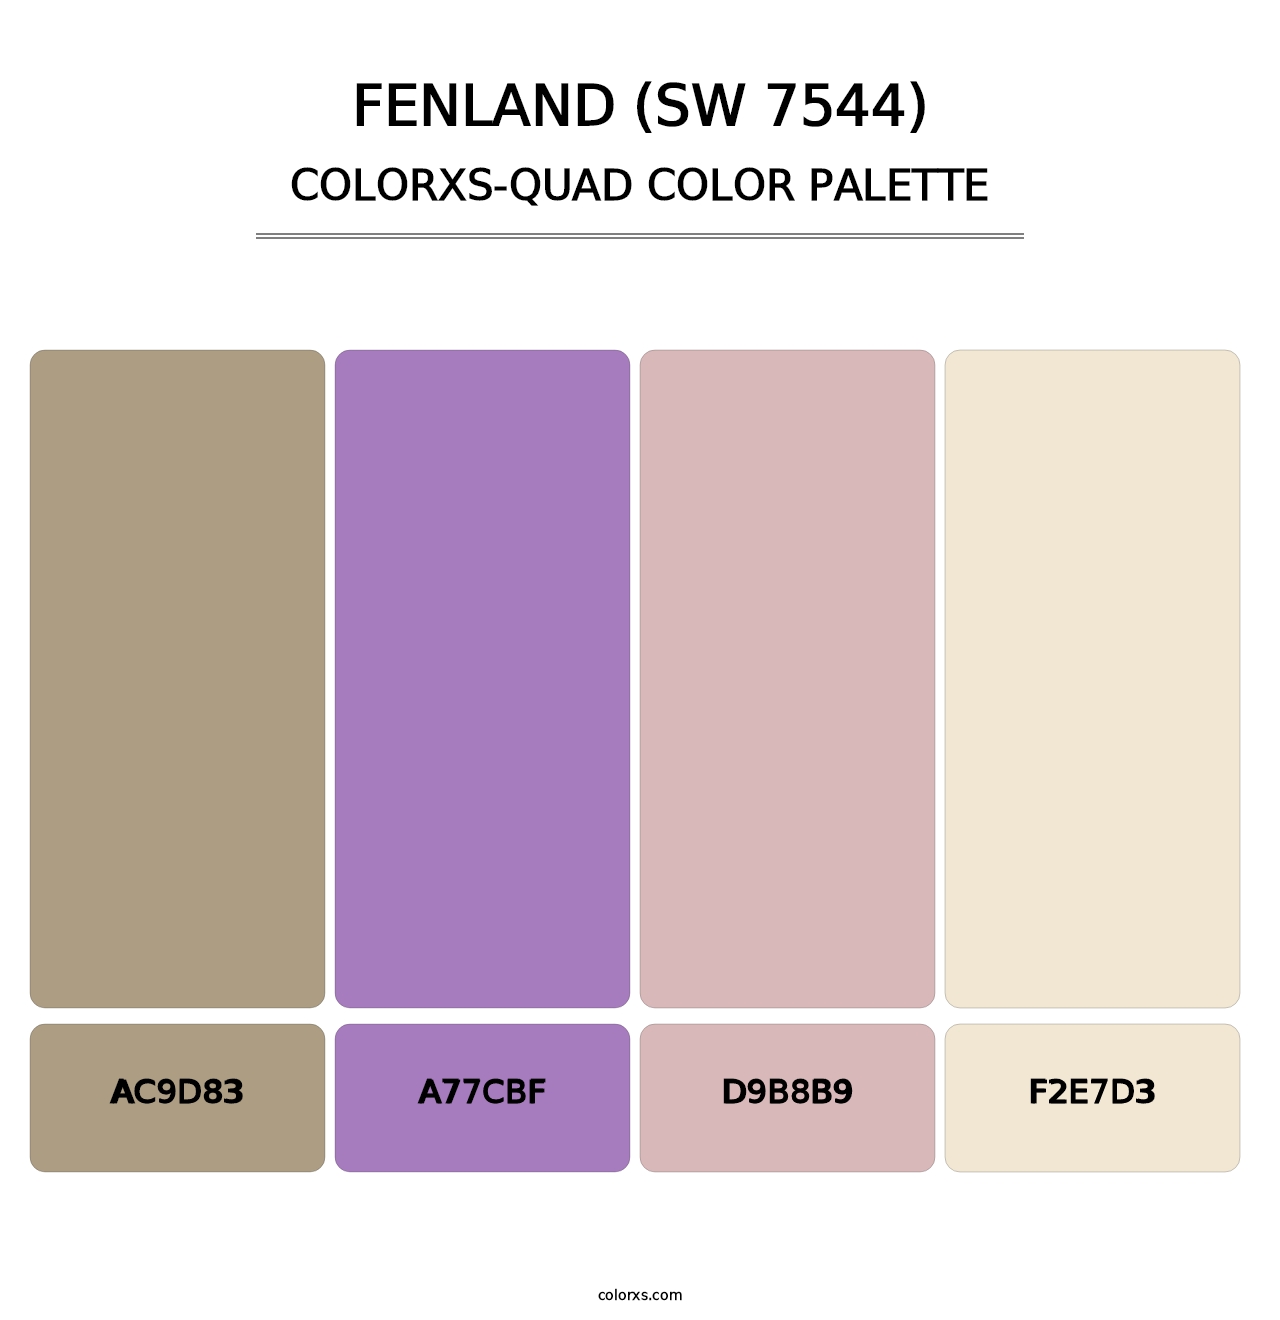 Fenland (SW 7544) - Colorxs Quad Palette